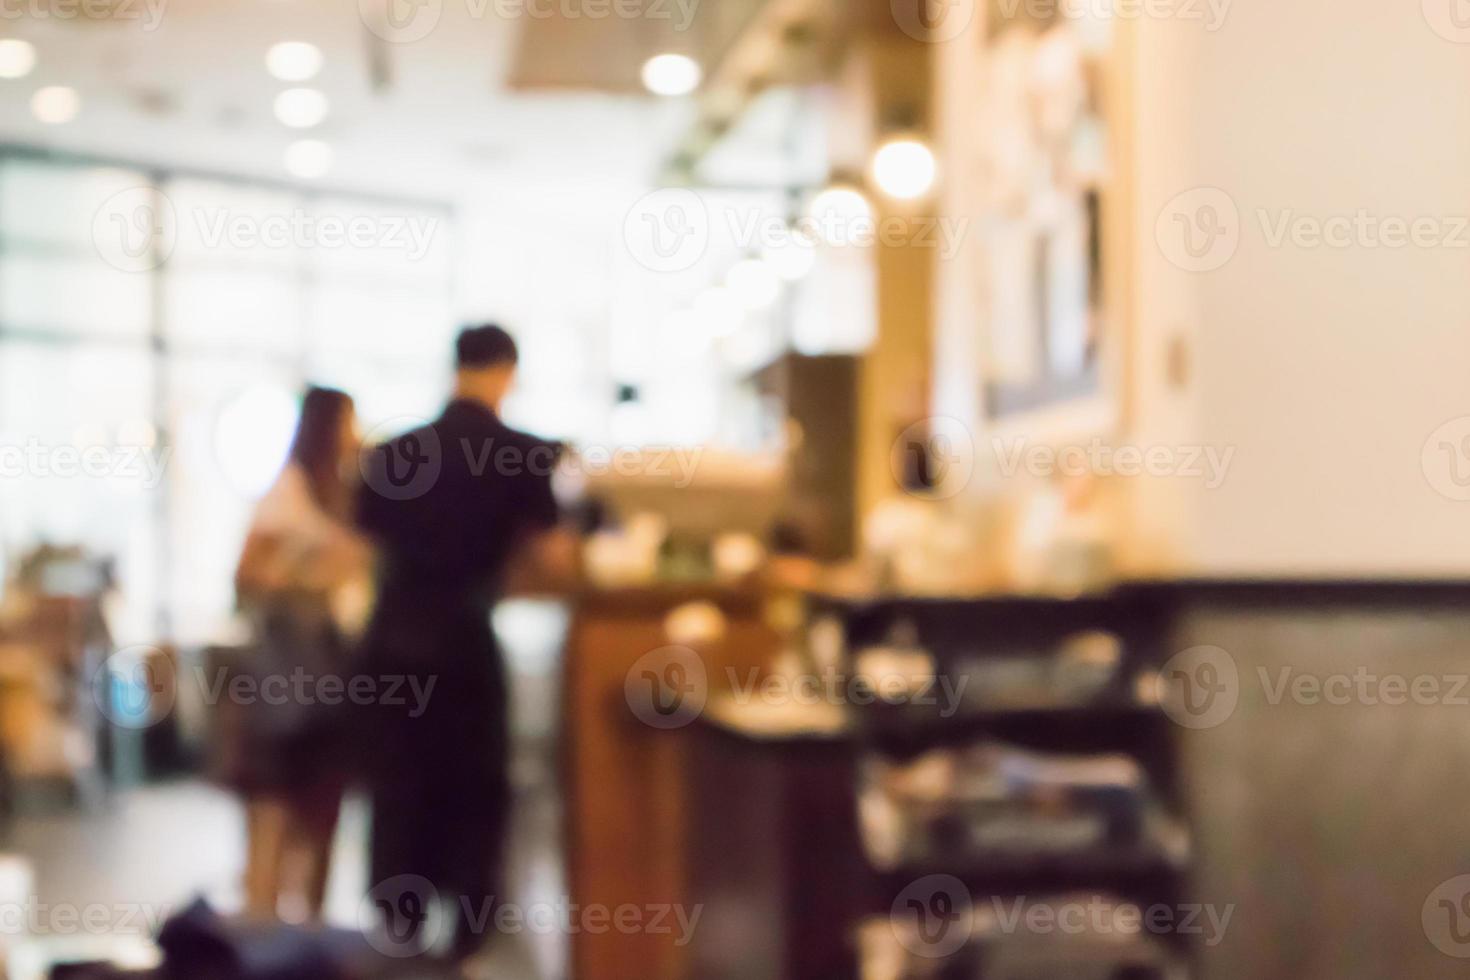 restaurant café of coffeeshop interieur met mensen abstracte intreepupil wazige achtergrond foto